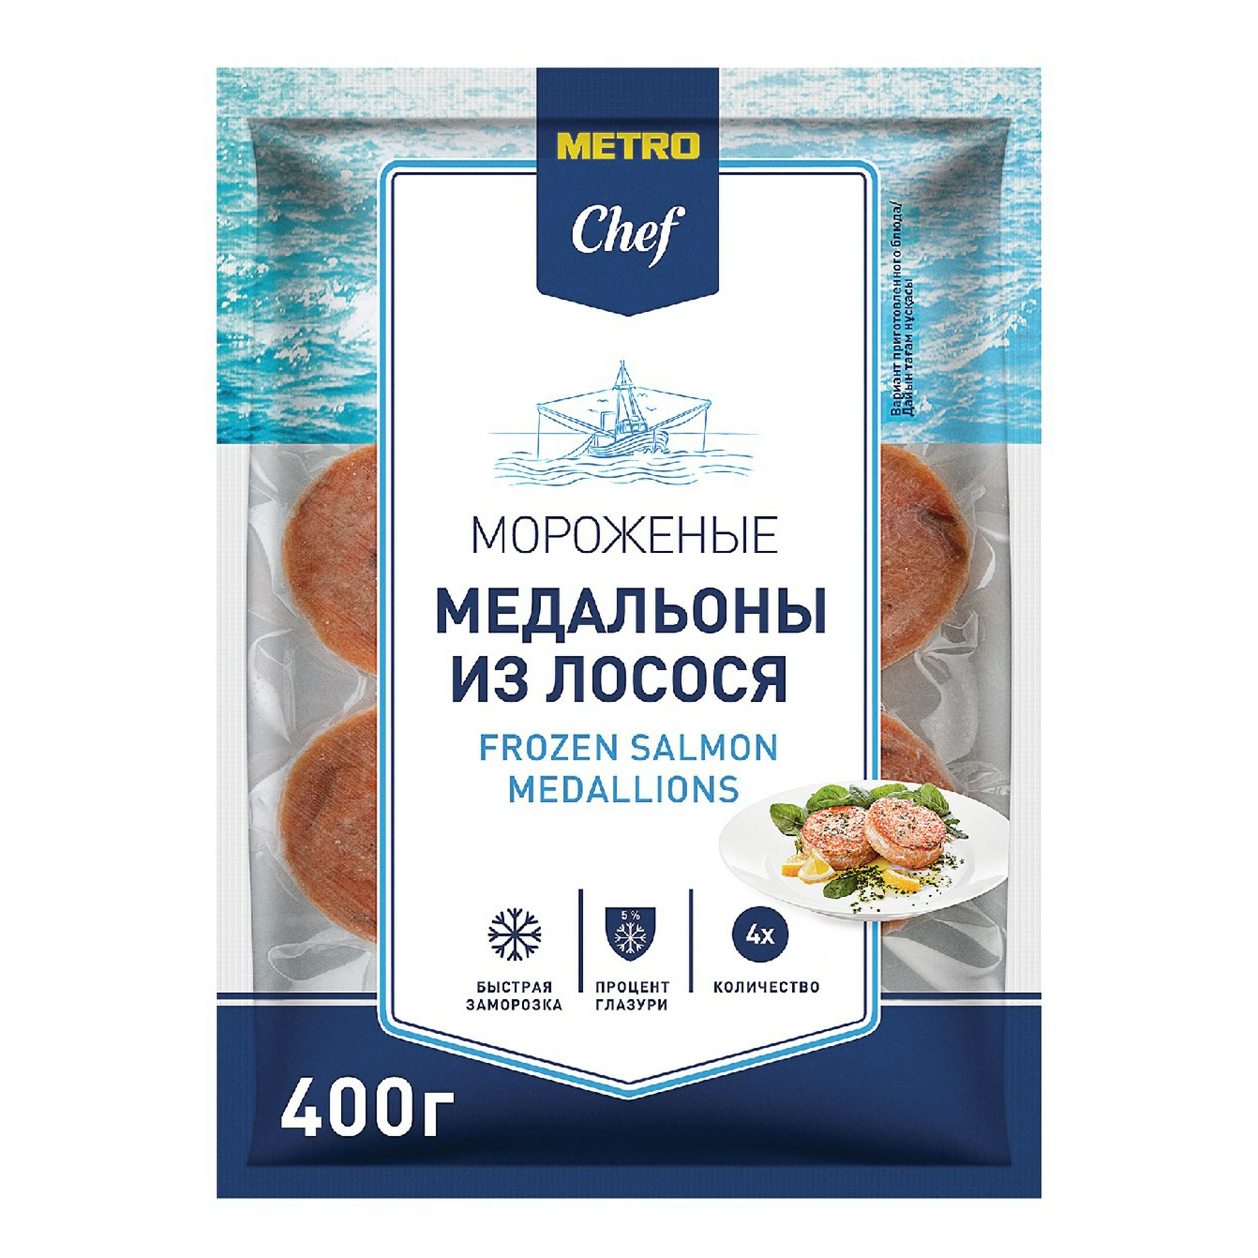 Лосось Metro Chef замороженный медальоны 400 г